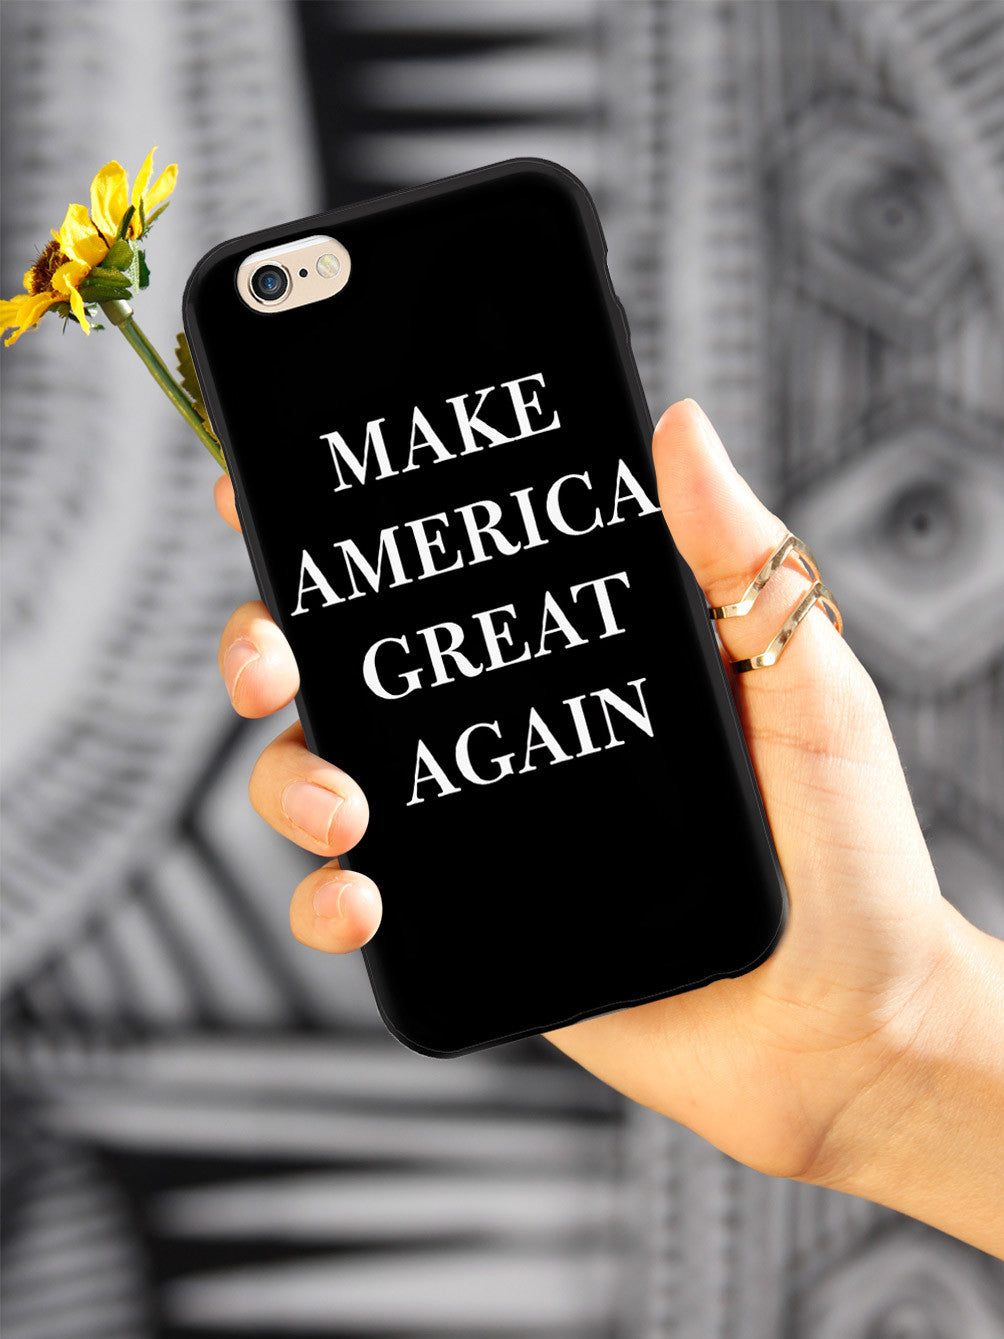 Make America Great Again - Black Case